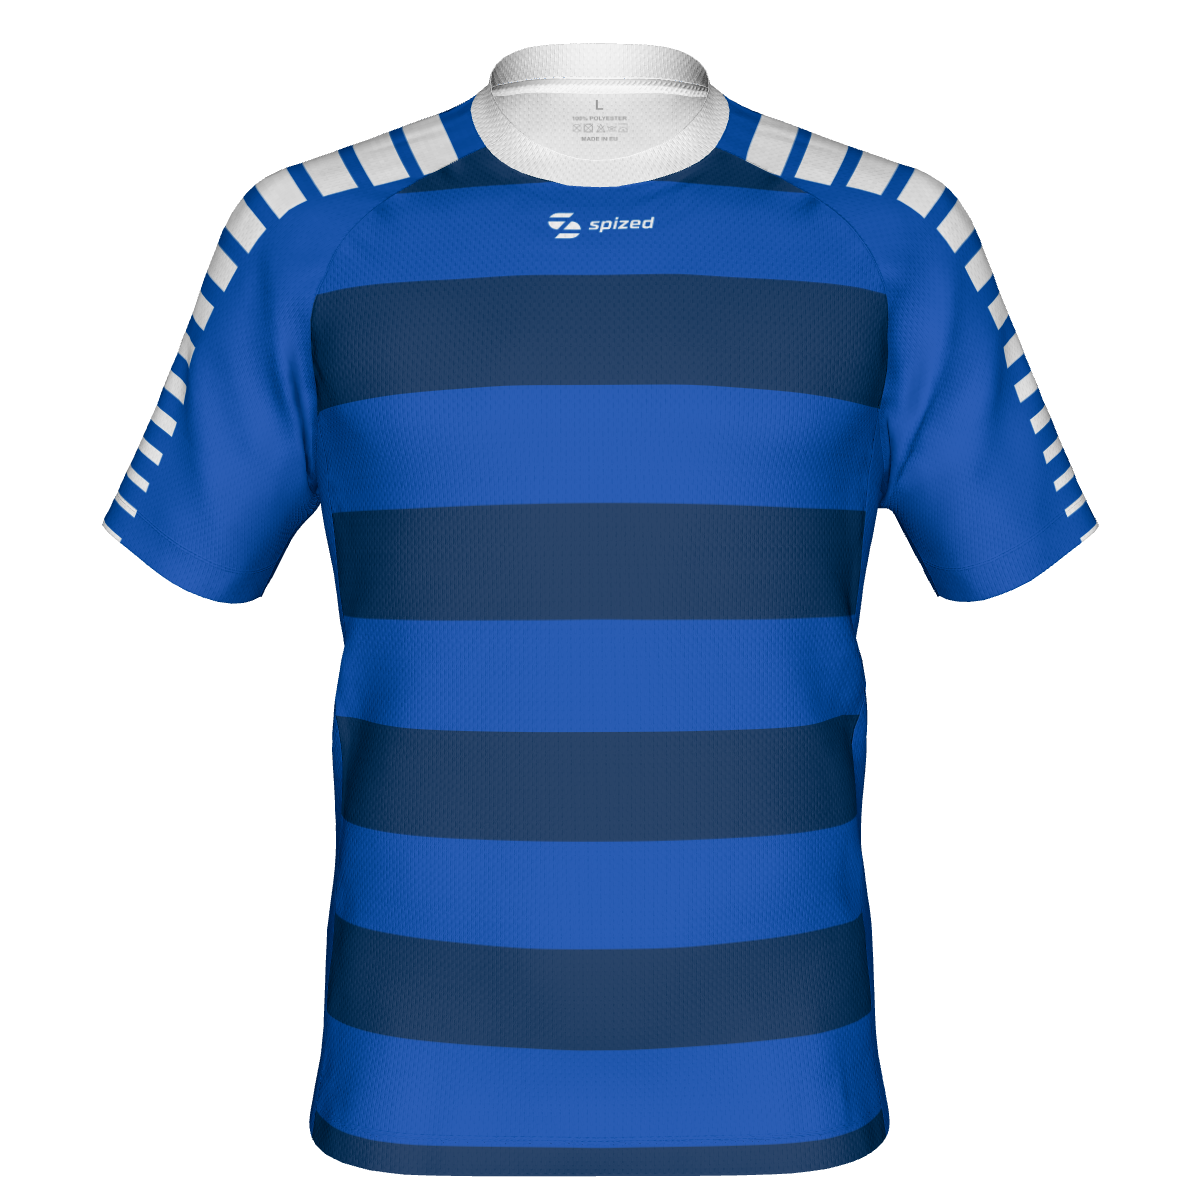 Viborg men's handball jersey